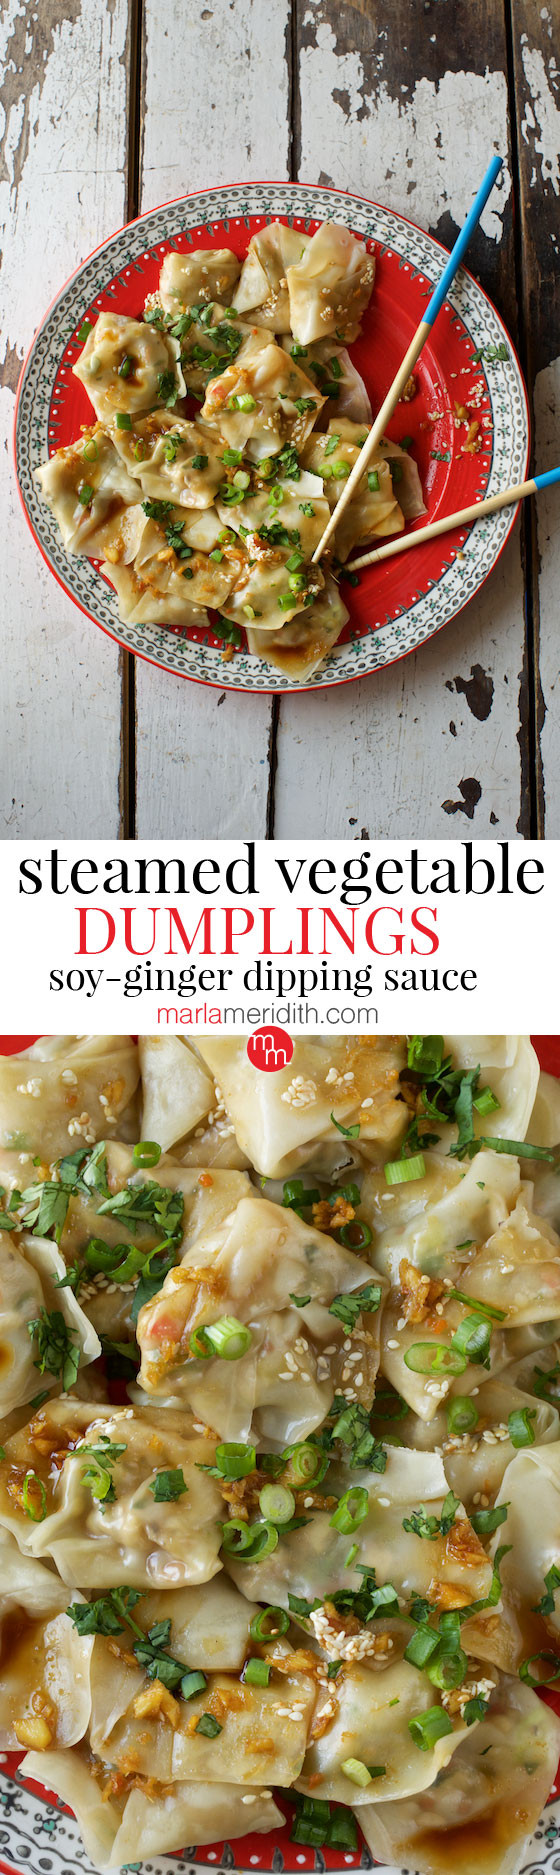 Dipping Sauce For Steamed Dumplings
 Steamed Ve able Dumplings with Ginger Soy Dipping Sauce